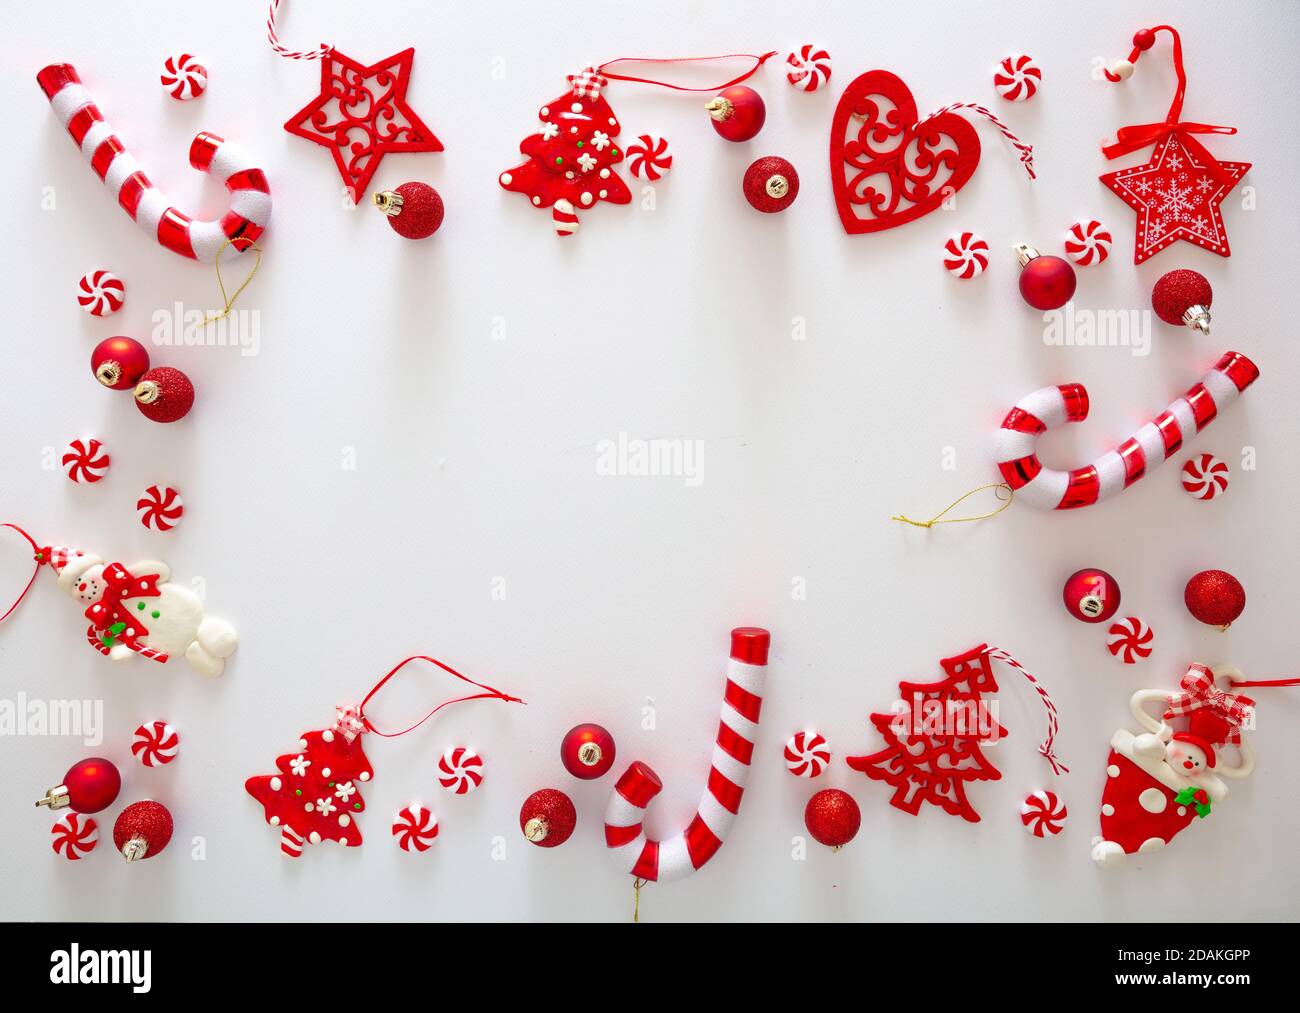 Weihnachtsschmuck Kugeln und süße Bonbons rote Farbe vor weißem Hintergrund, Weihnachtsrahmen flach legen, Urlaub Grußkarte Vorlage, Draufsicht Stockfoto